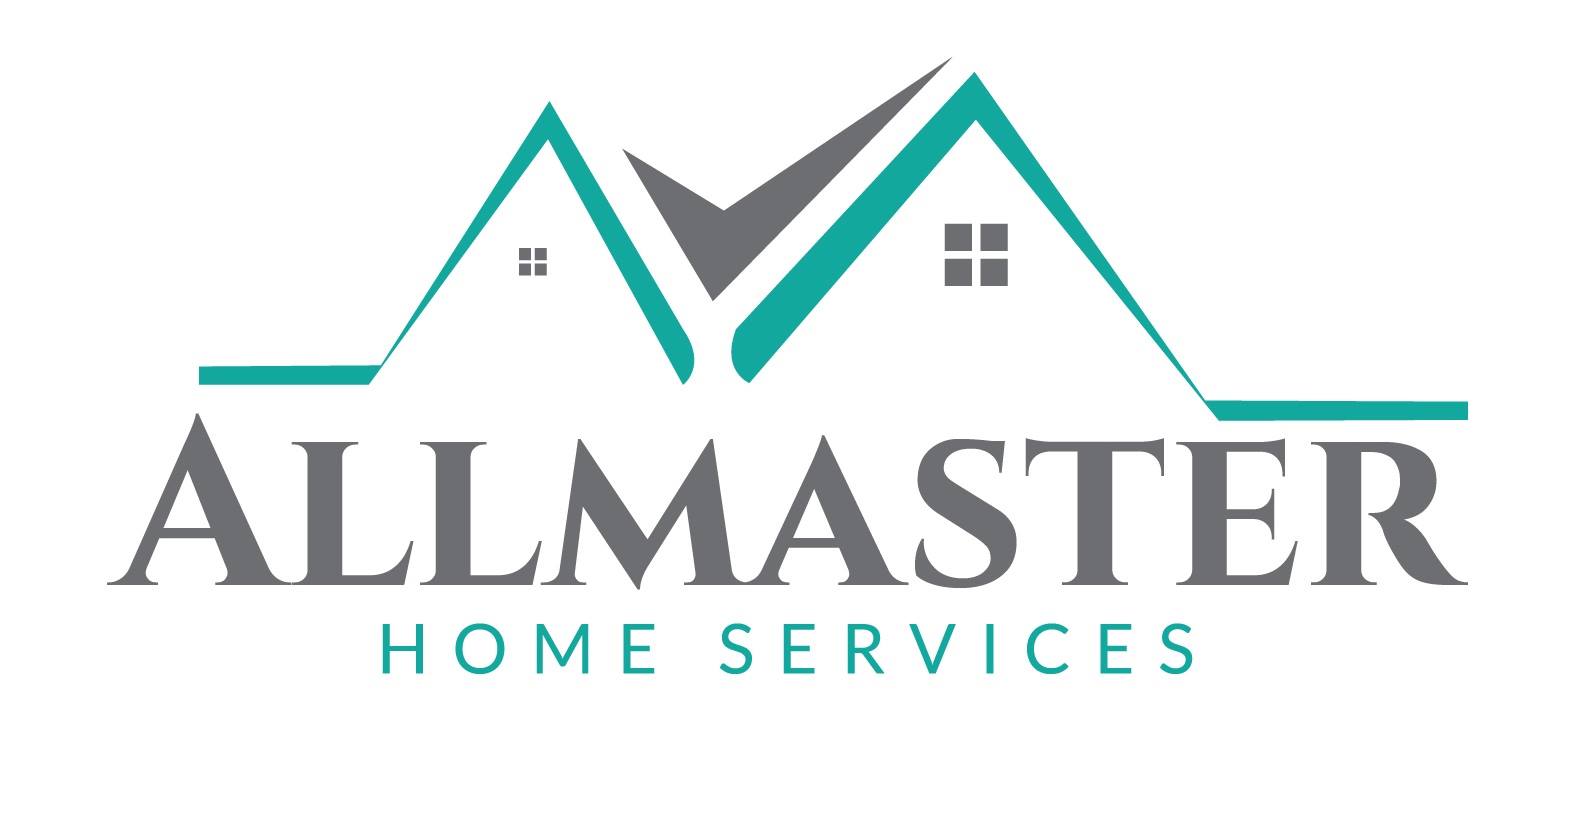 Allmaster Home Services